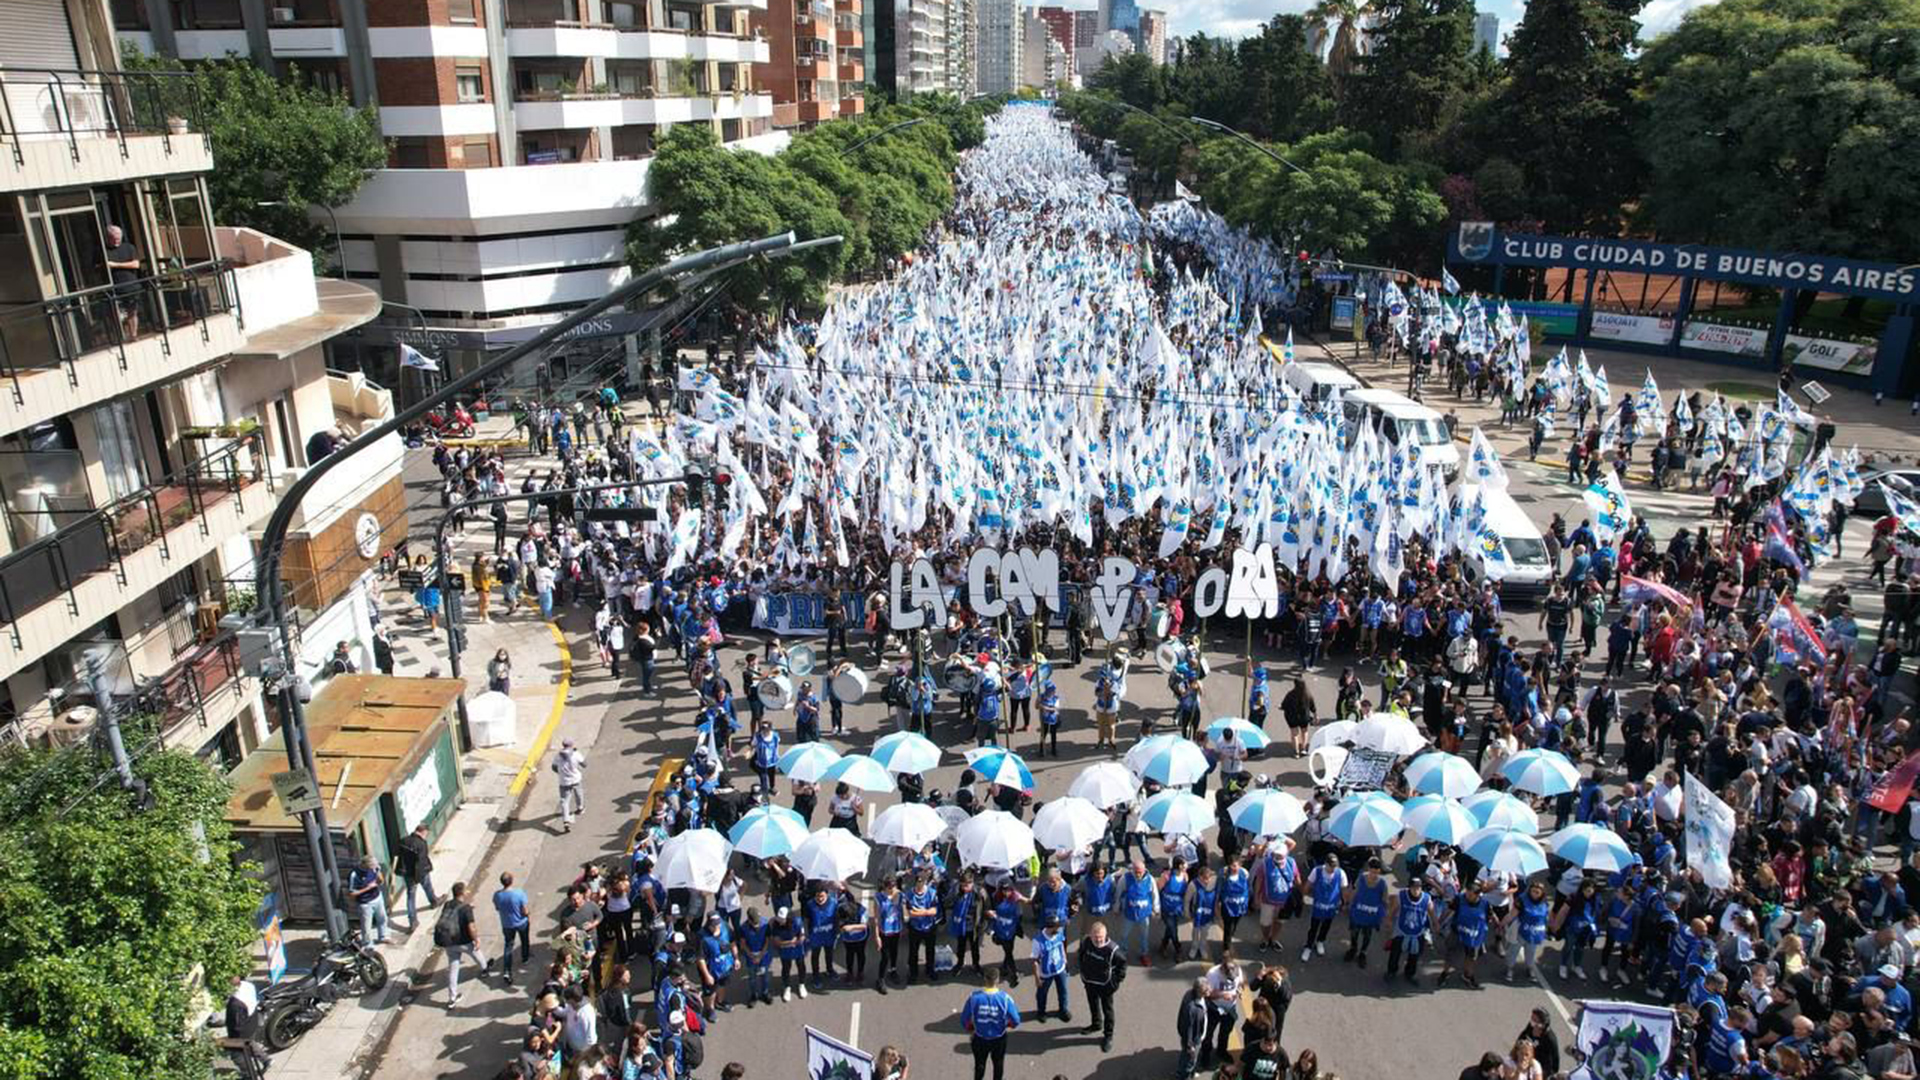 La Cámpora movilizó a miles de personas por las calles de la Ciudad de Buenos Aires